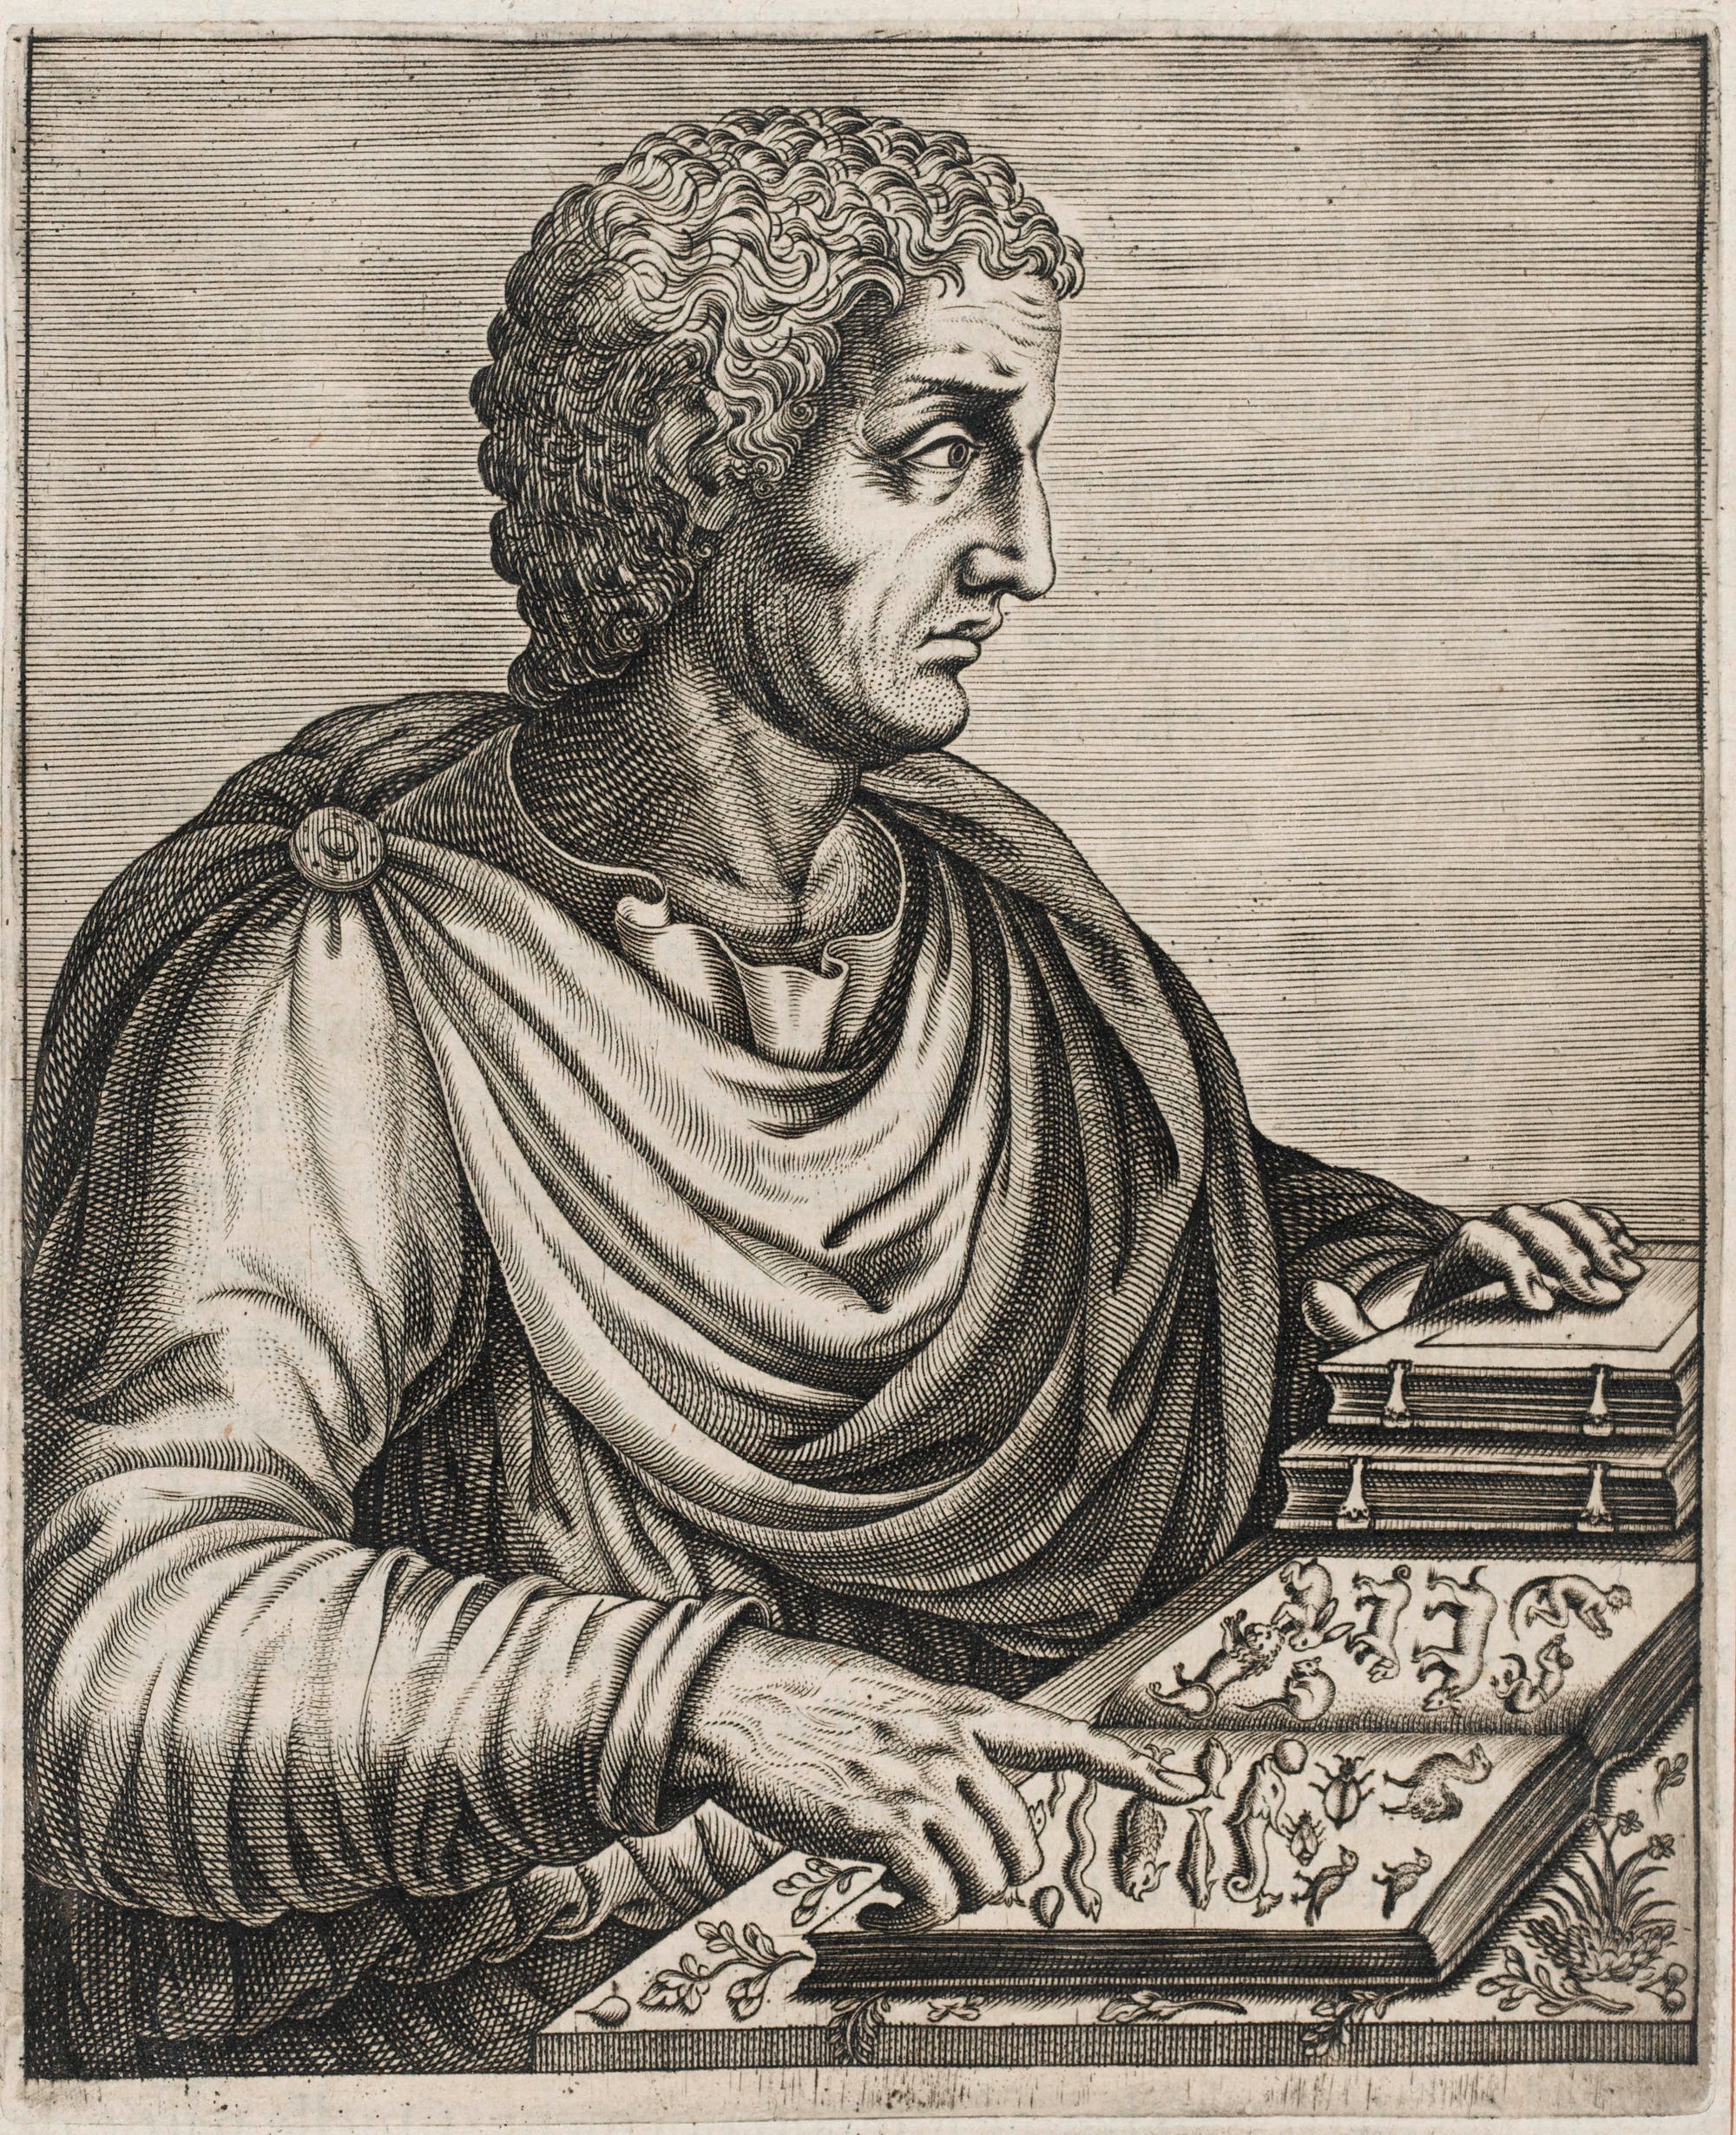 Neuzeitliches Porträt des Römers Gaius Plinius Secundus.